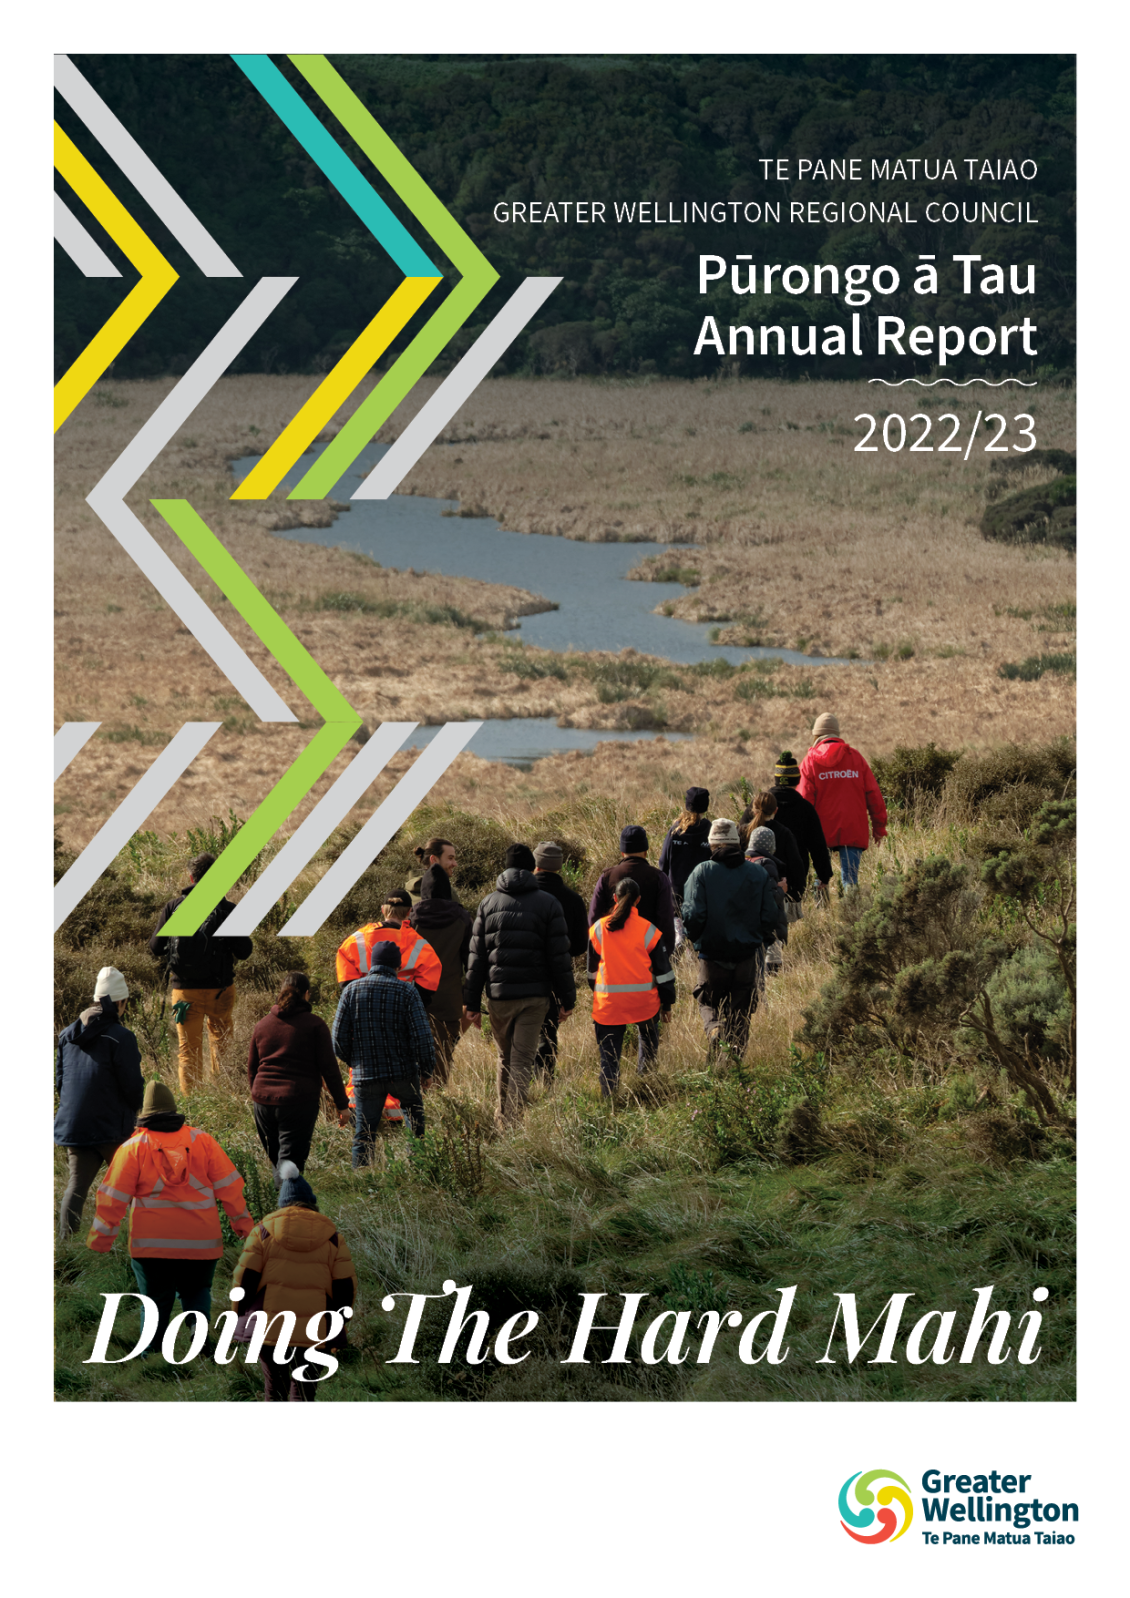 Te Pane Matua Taiao he whakarāpopoto i te pūrongo ā-tau 2022/23 | 2022/23 Summary of the Annual Report